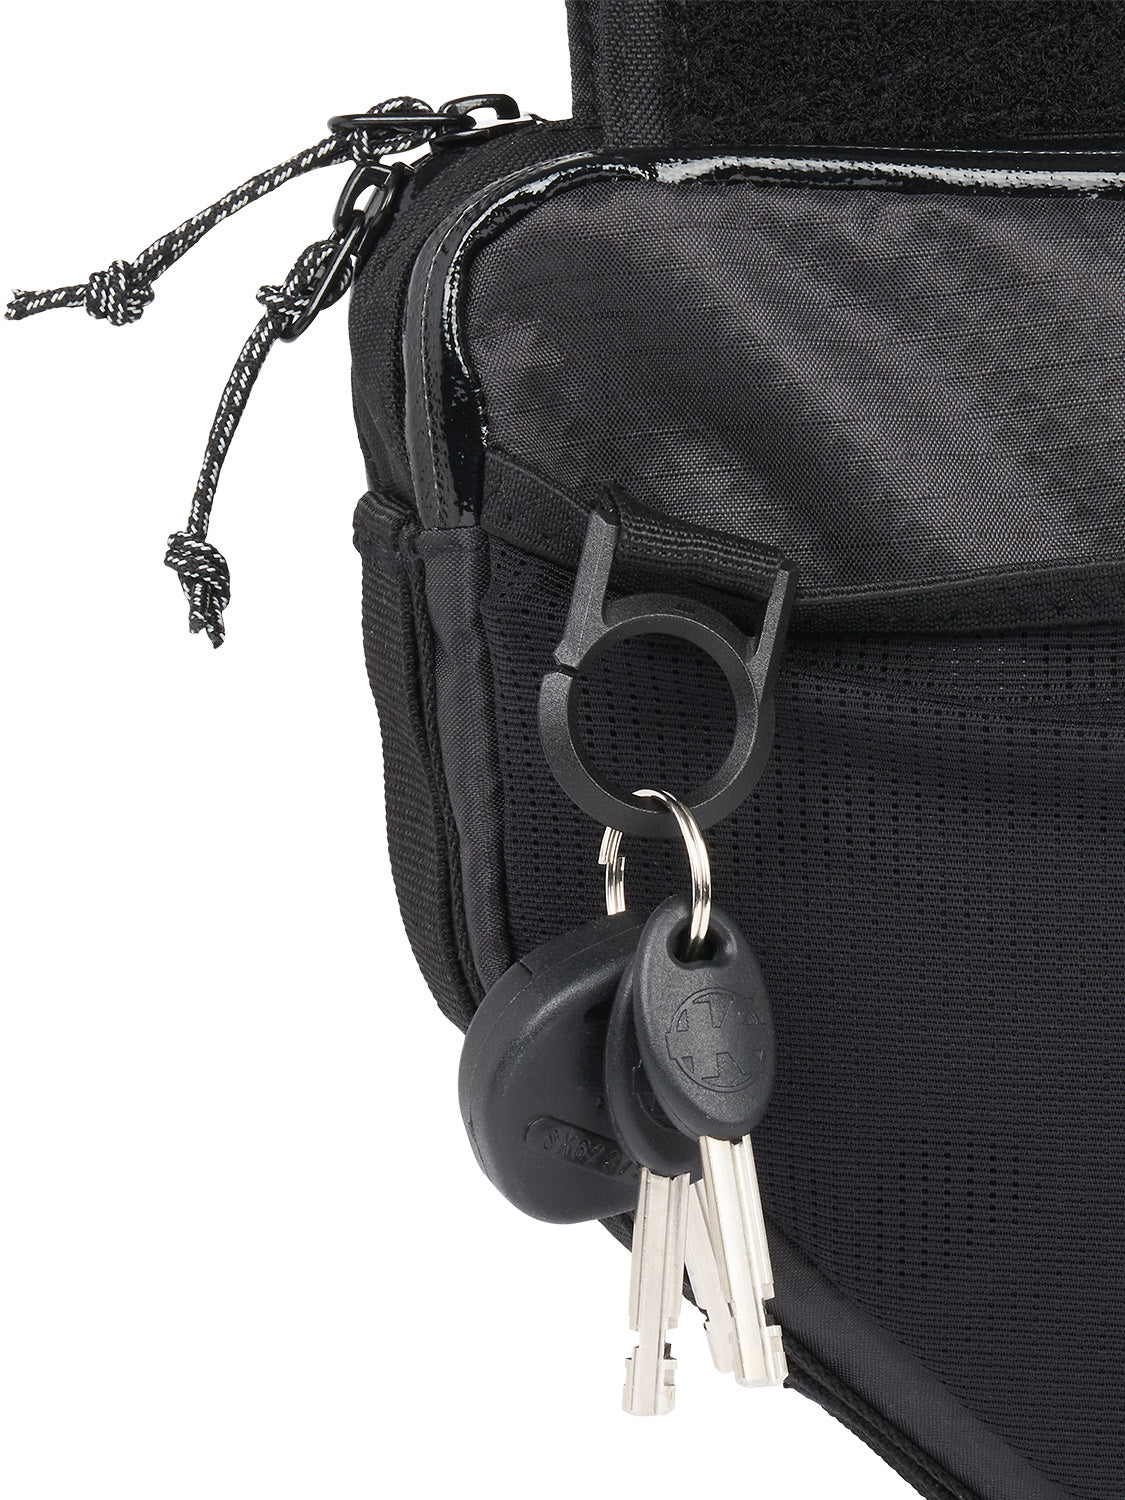 AEVOR-Frame-Bag-Large-Proof-Black-detail